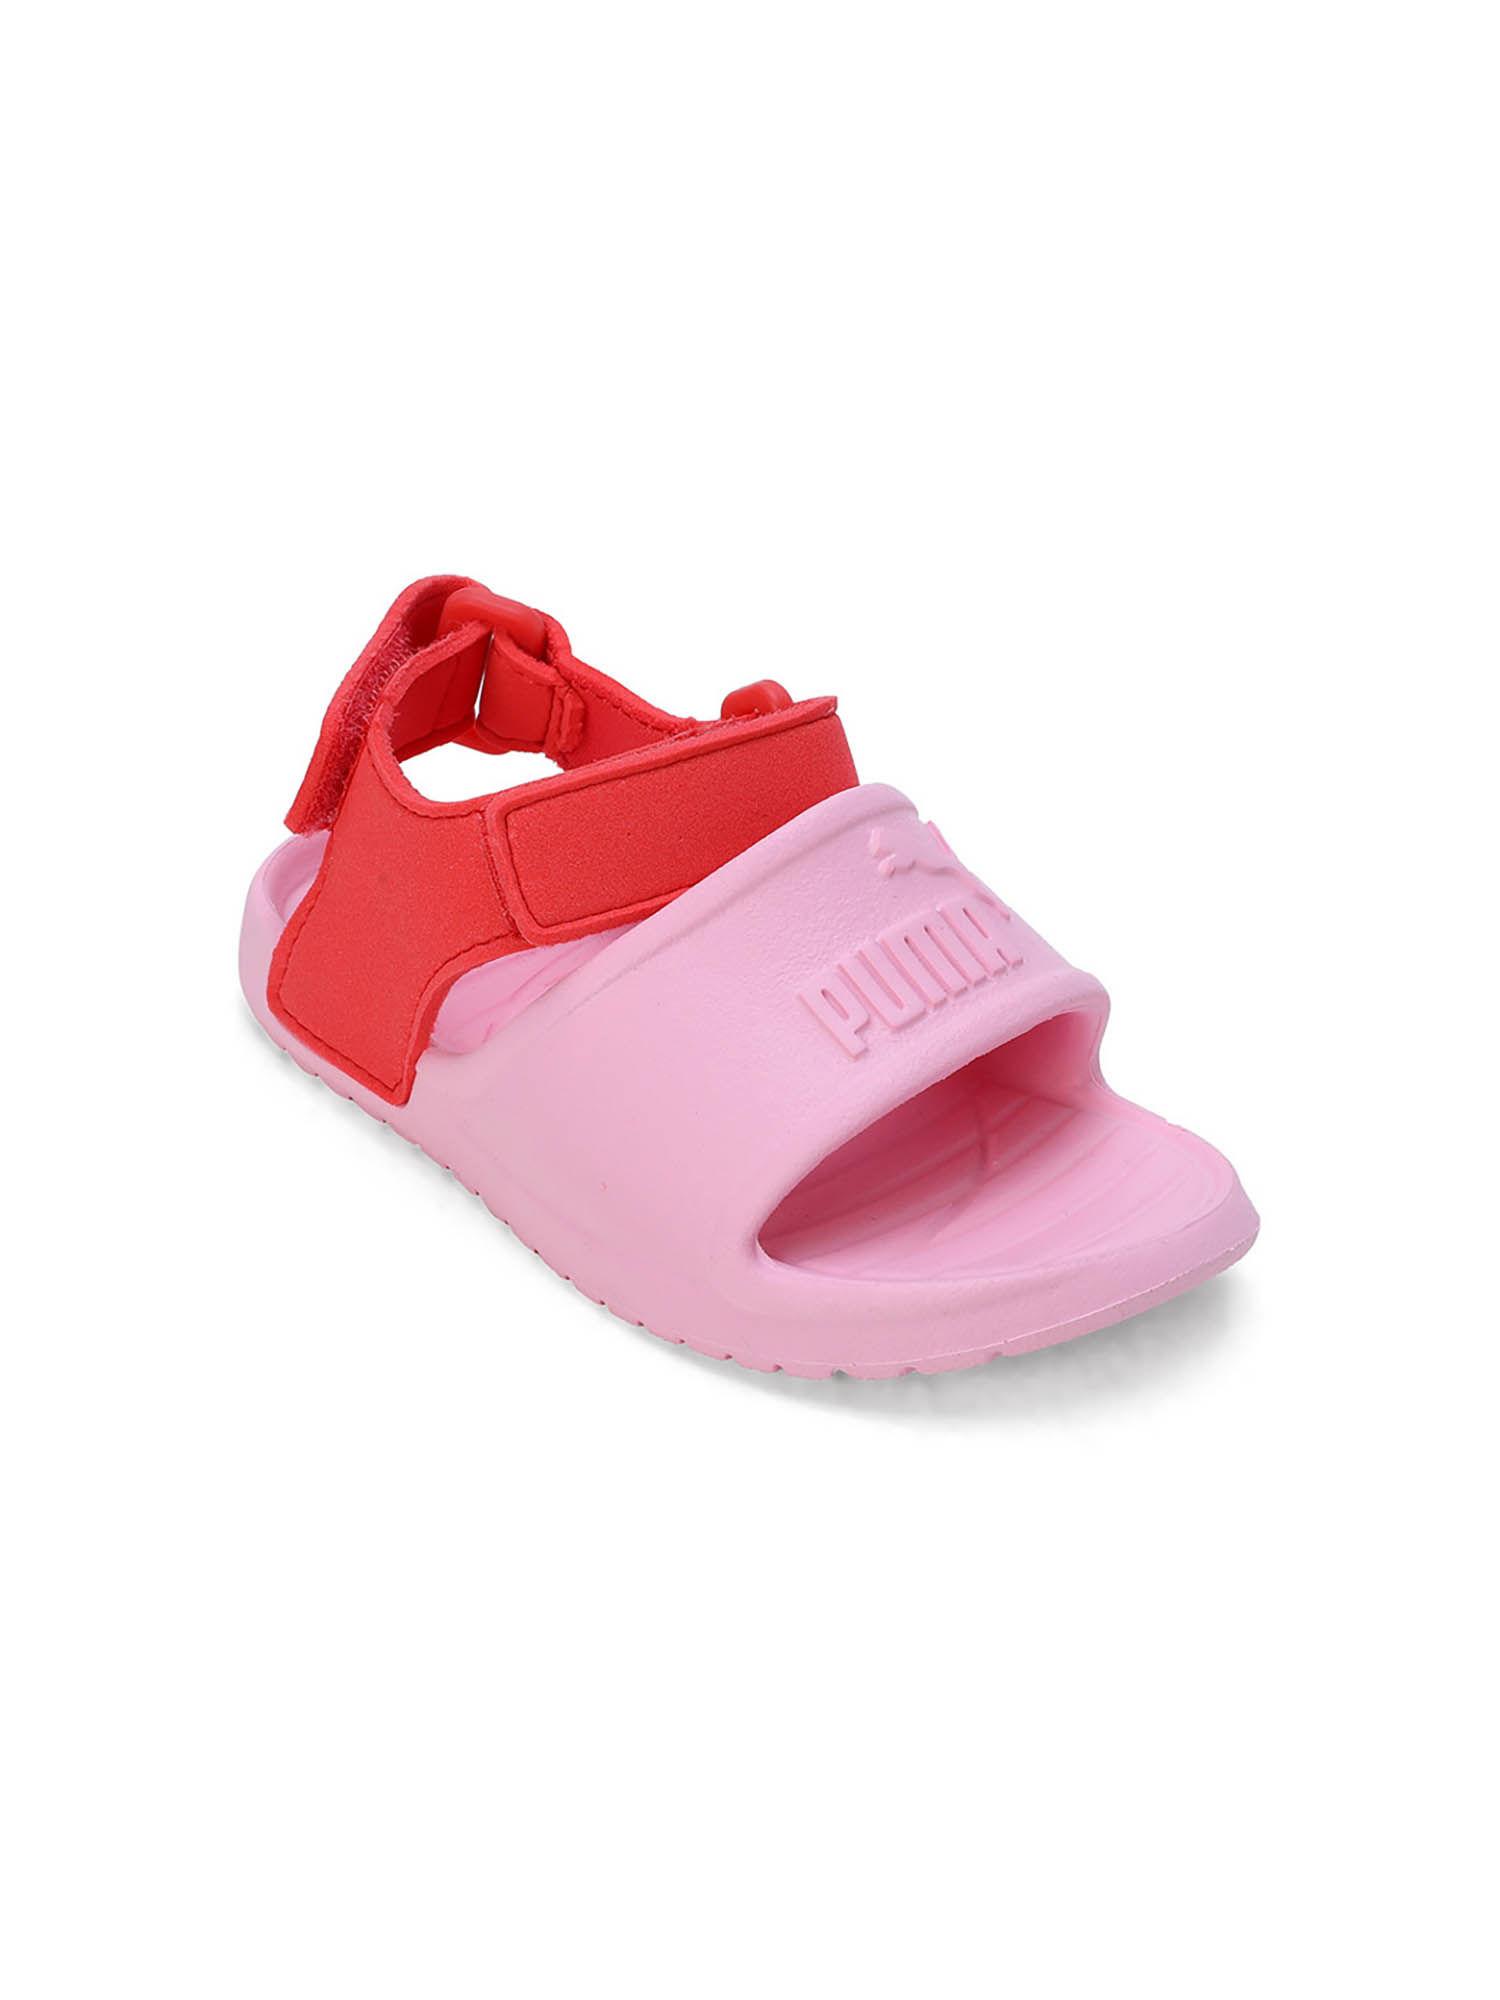 dive cat v2 injex inf infant pink sandal